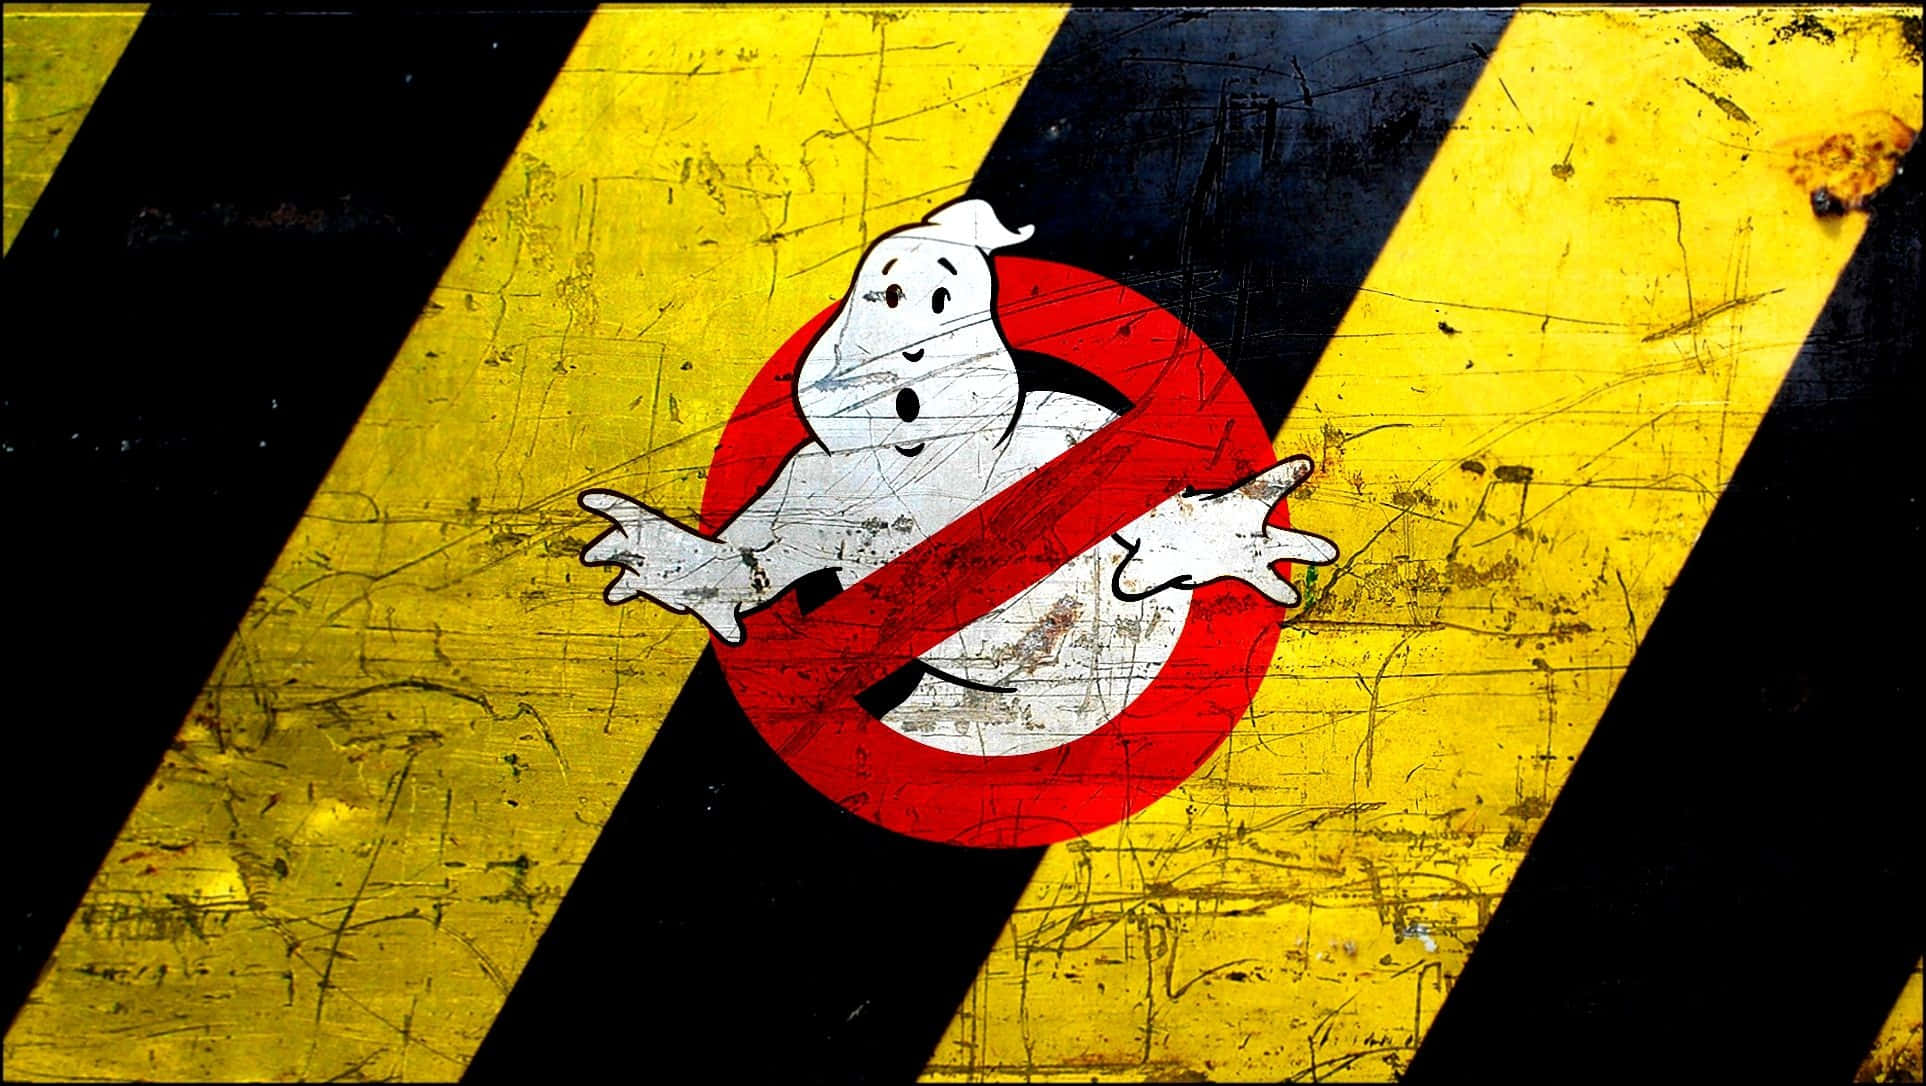 ghostbusters art wallpaper